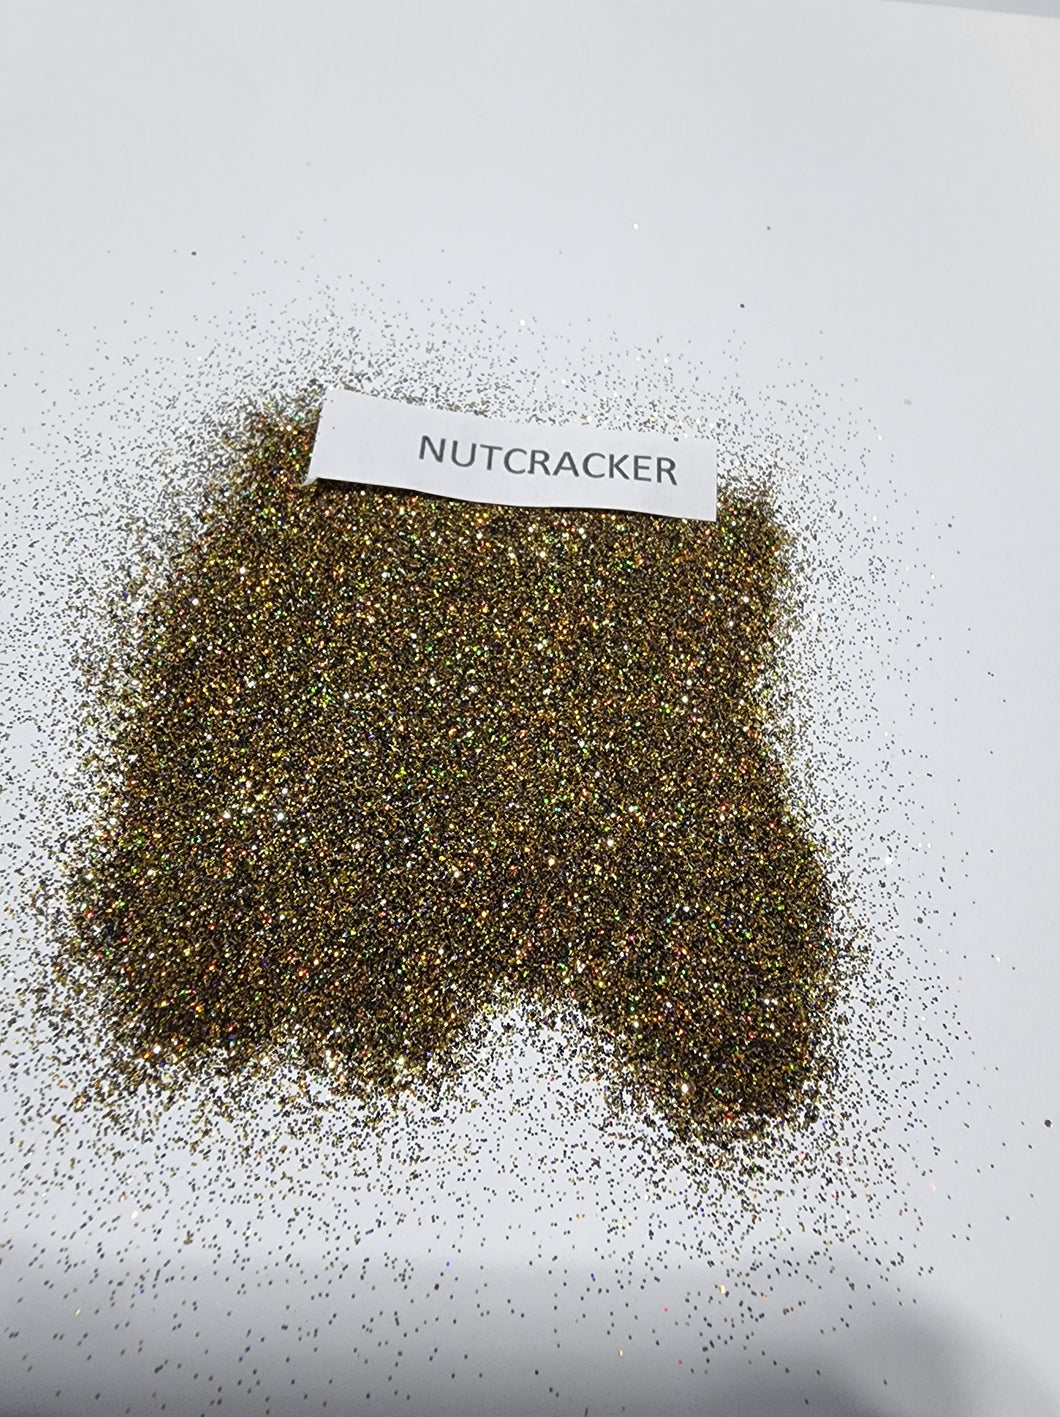 Nutcracker 1/128